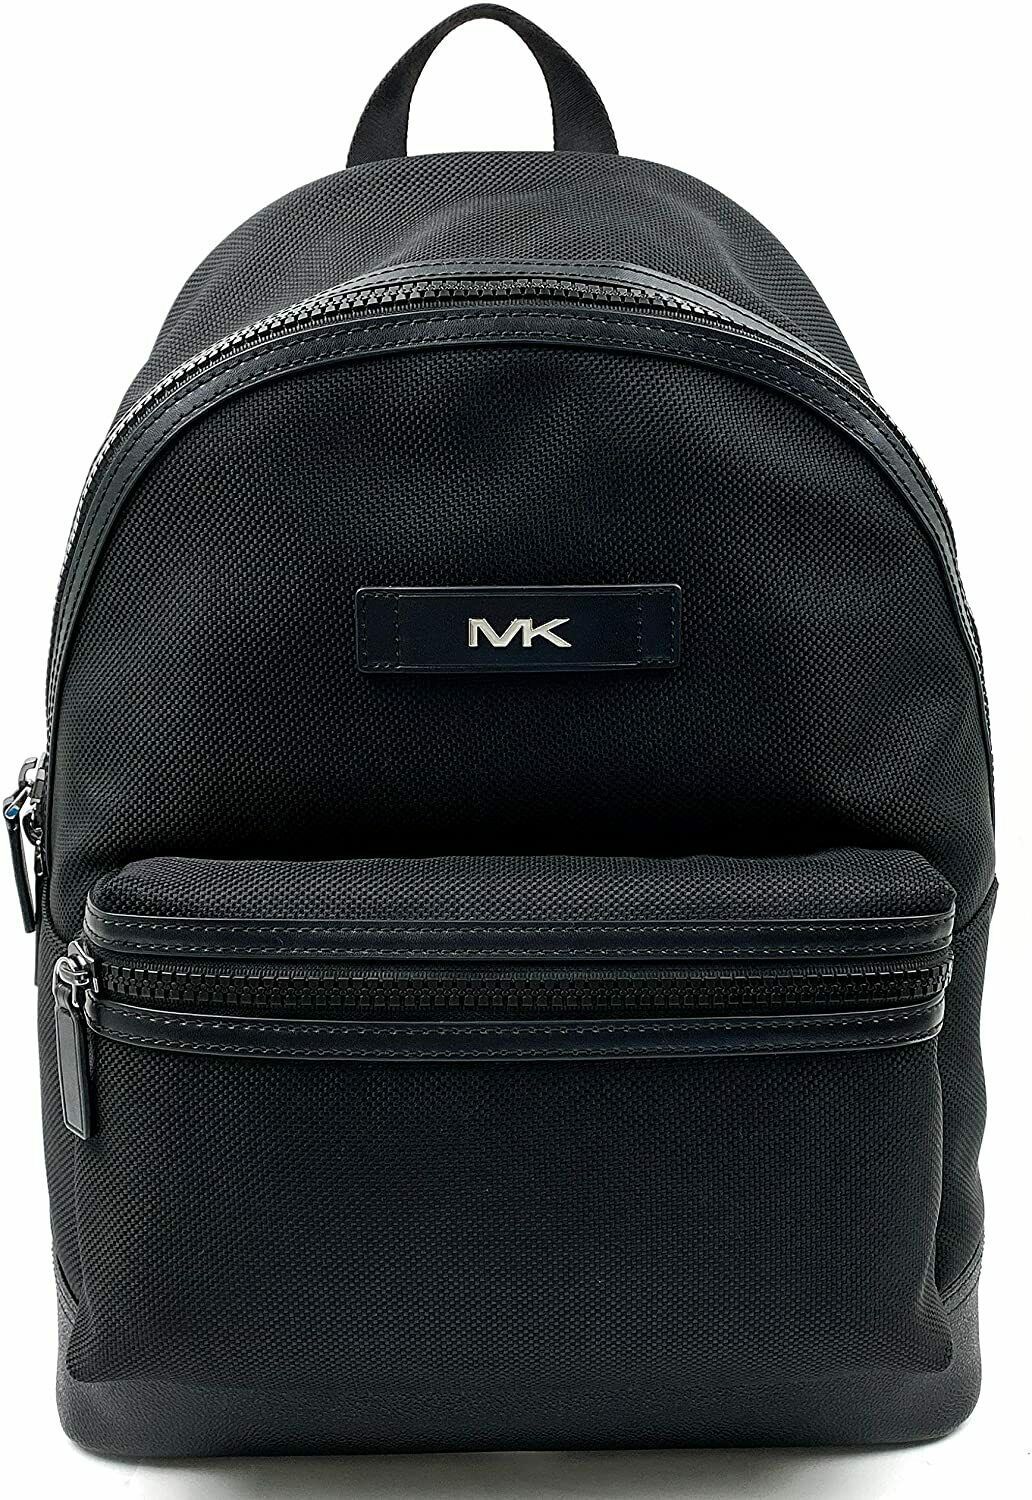 Michael Kors Kent Sport Black Nylon Large Backpack 37F9LKSB2C $398 Retail Price